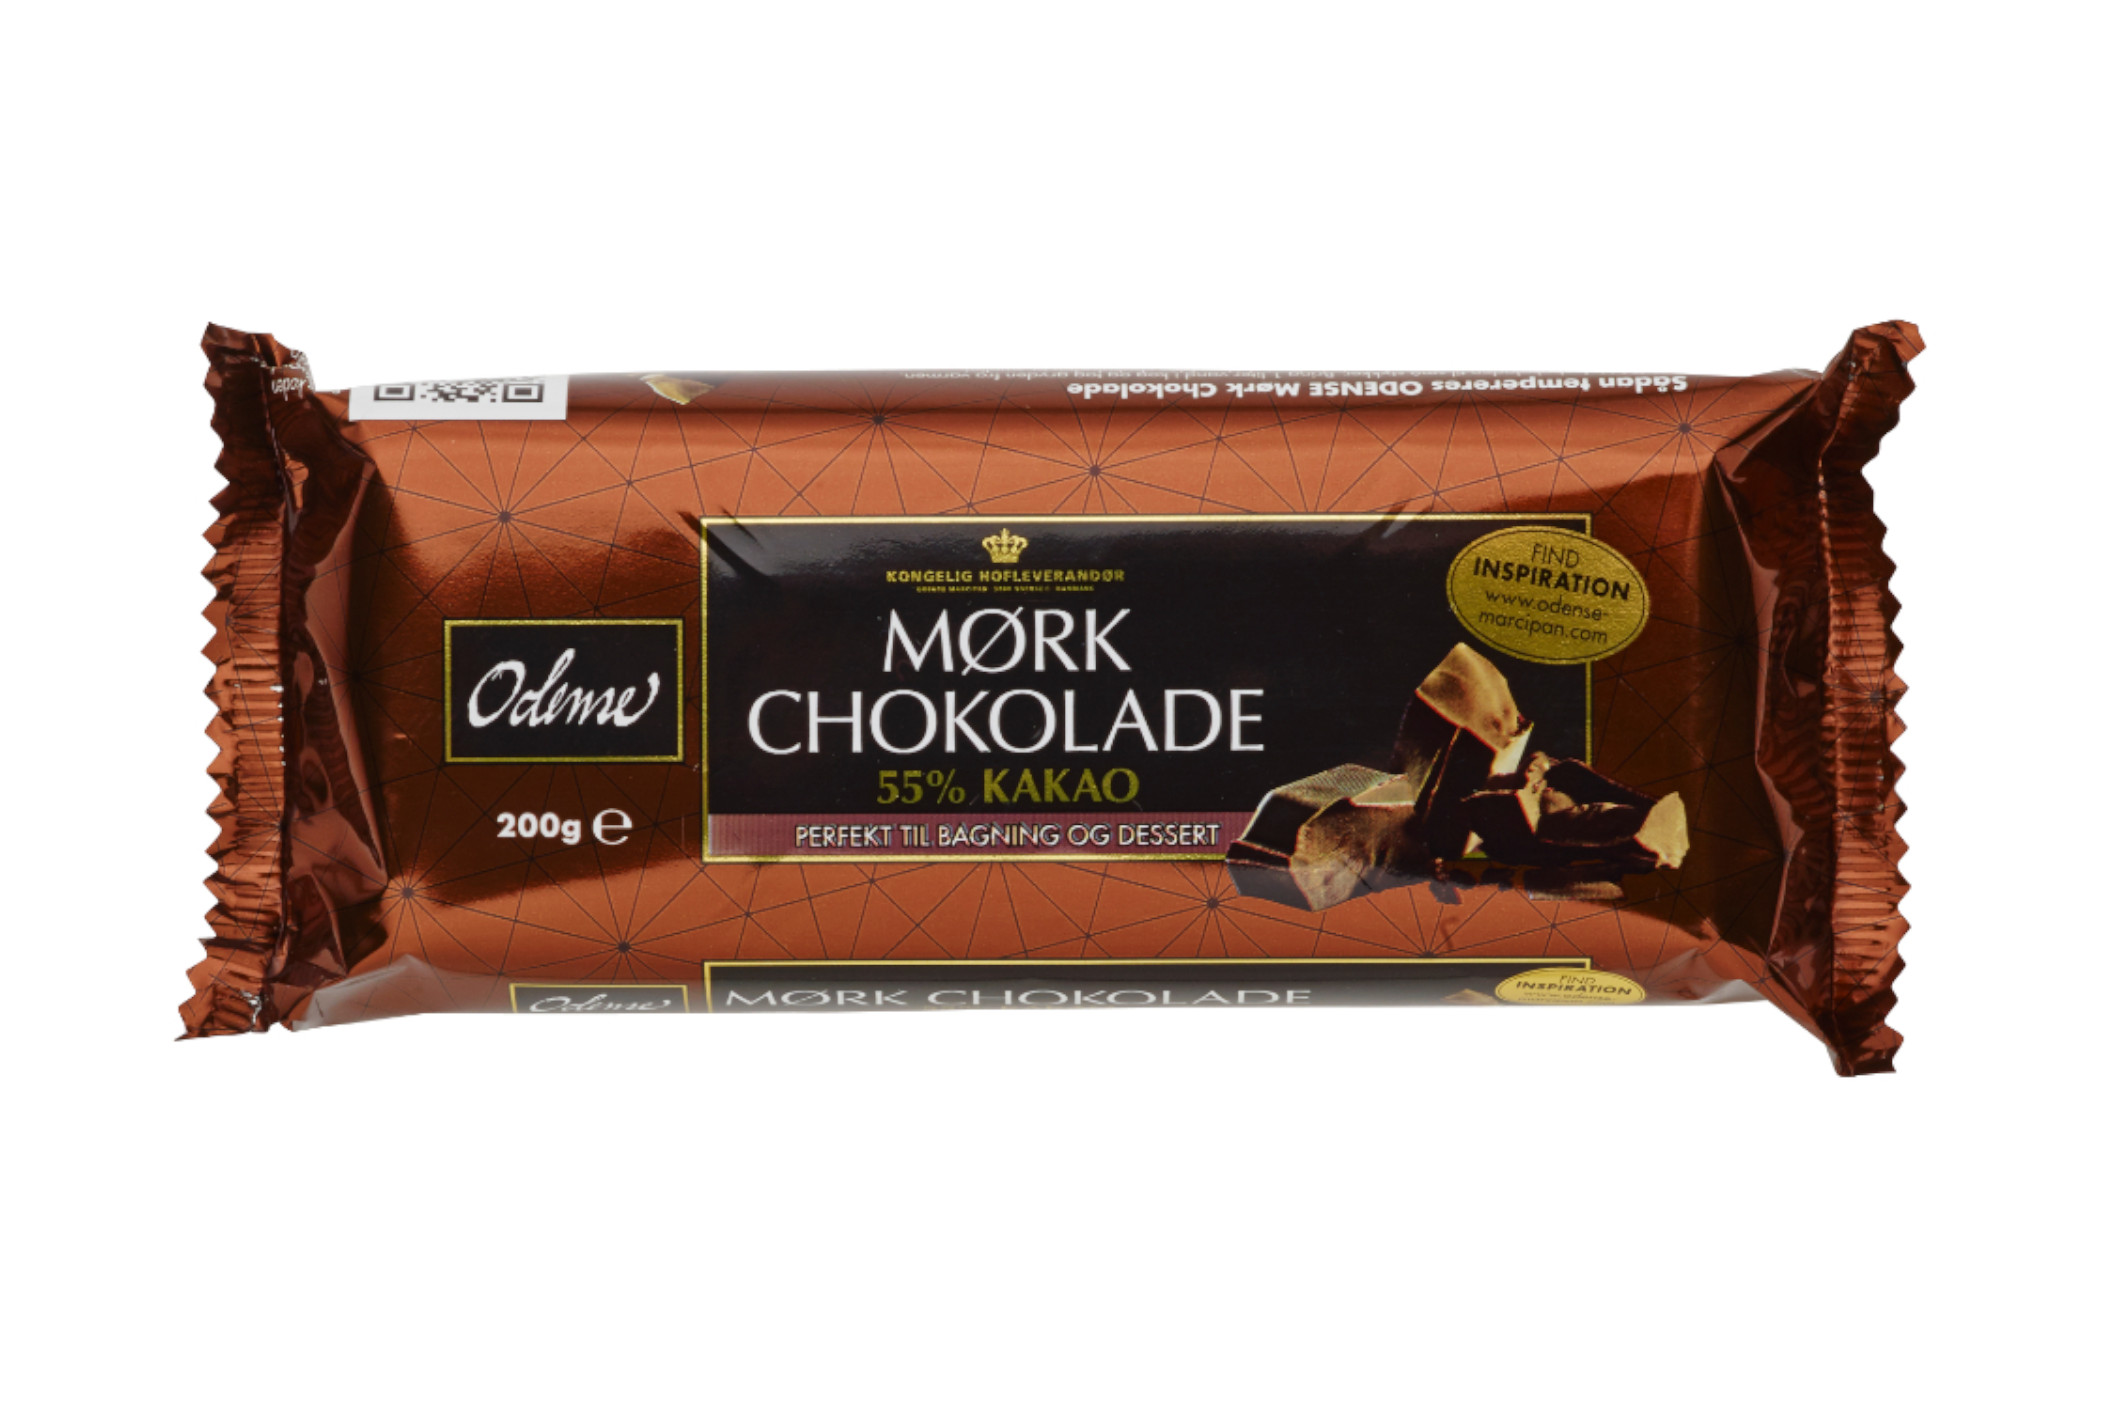 Čokoláda tmavá 55% - Odense 200 g